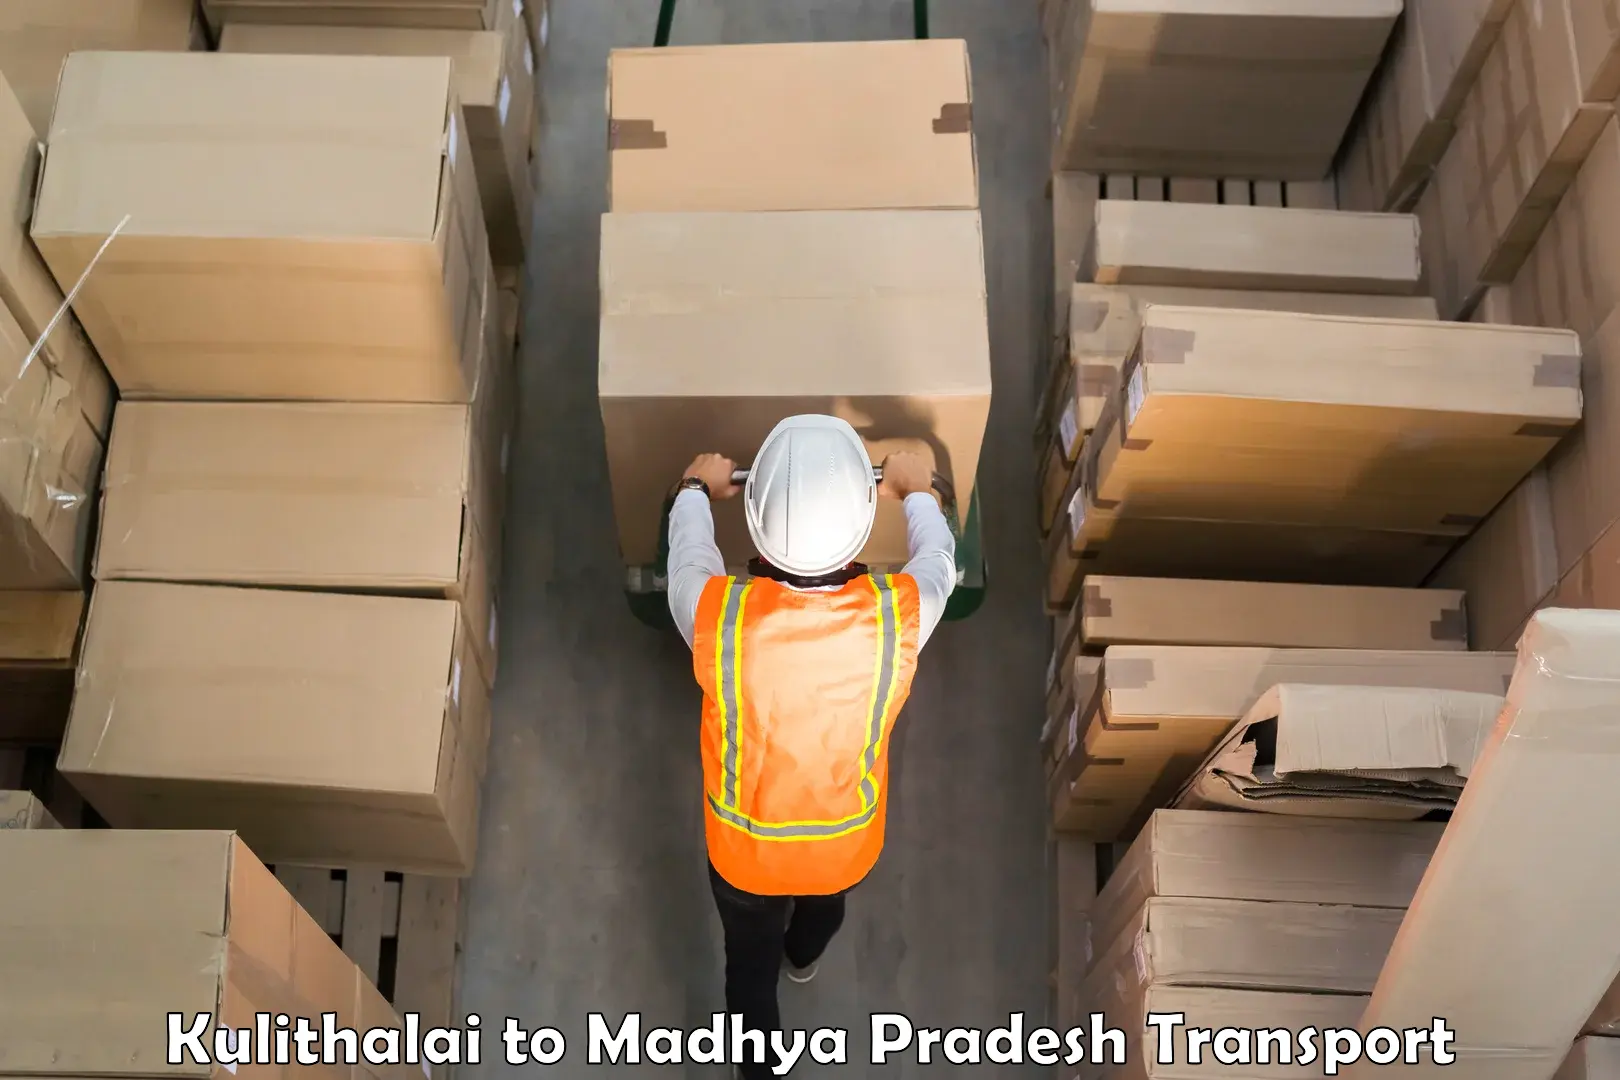 Furniture transport service Kulithalai to Chhatarpur